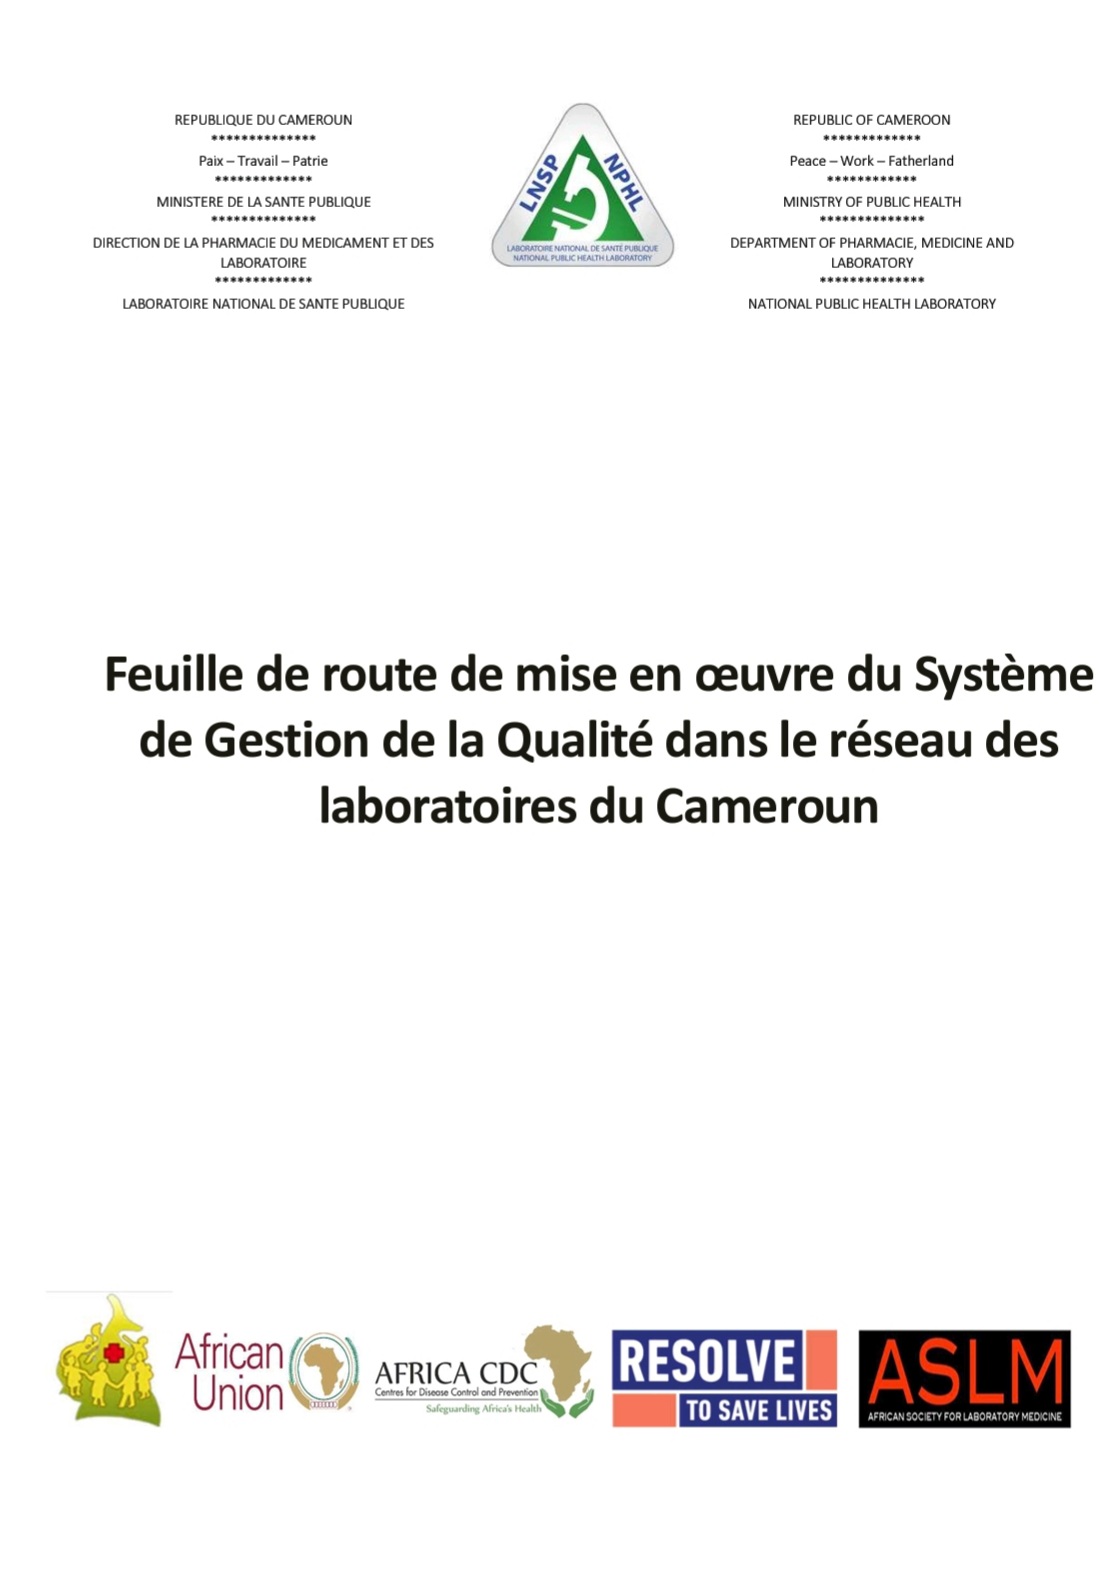 Feuille de route de mise en oeuvre du Système de Gestion de la Qualité dans le réseau des laboratoires du Cameroun